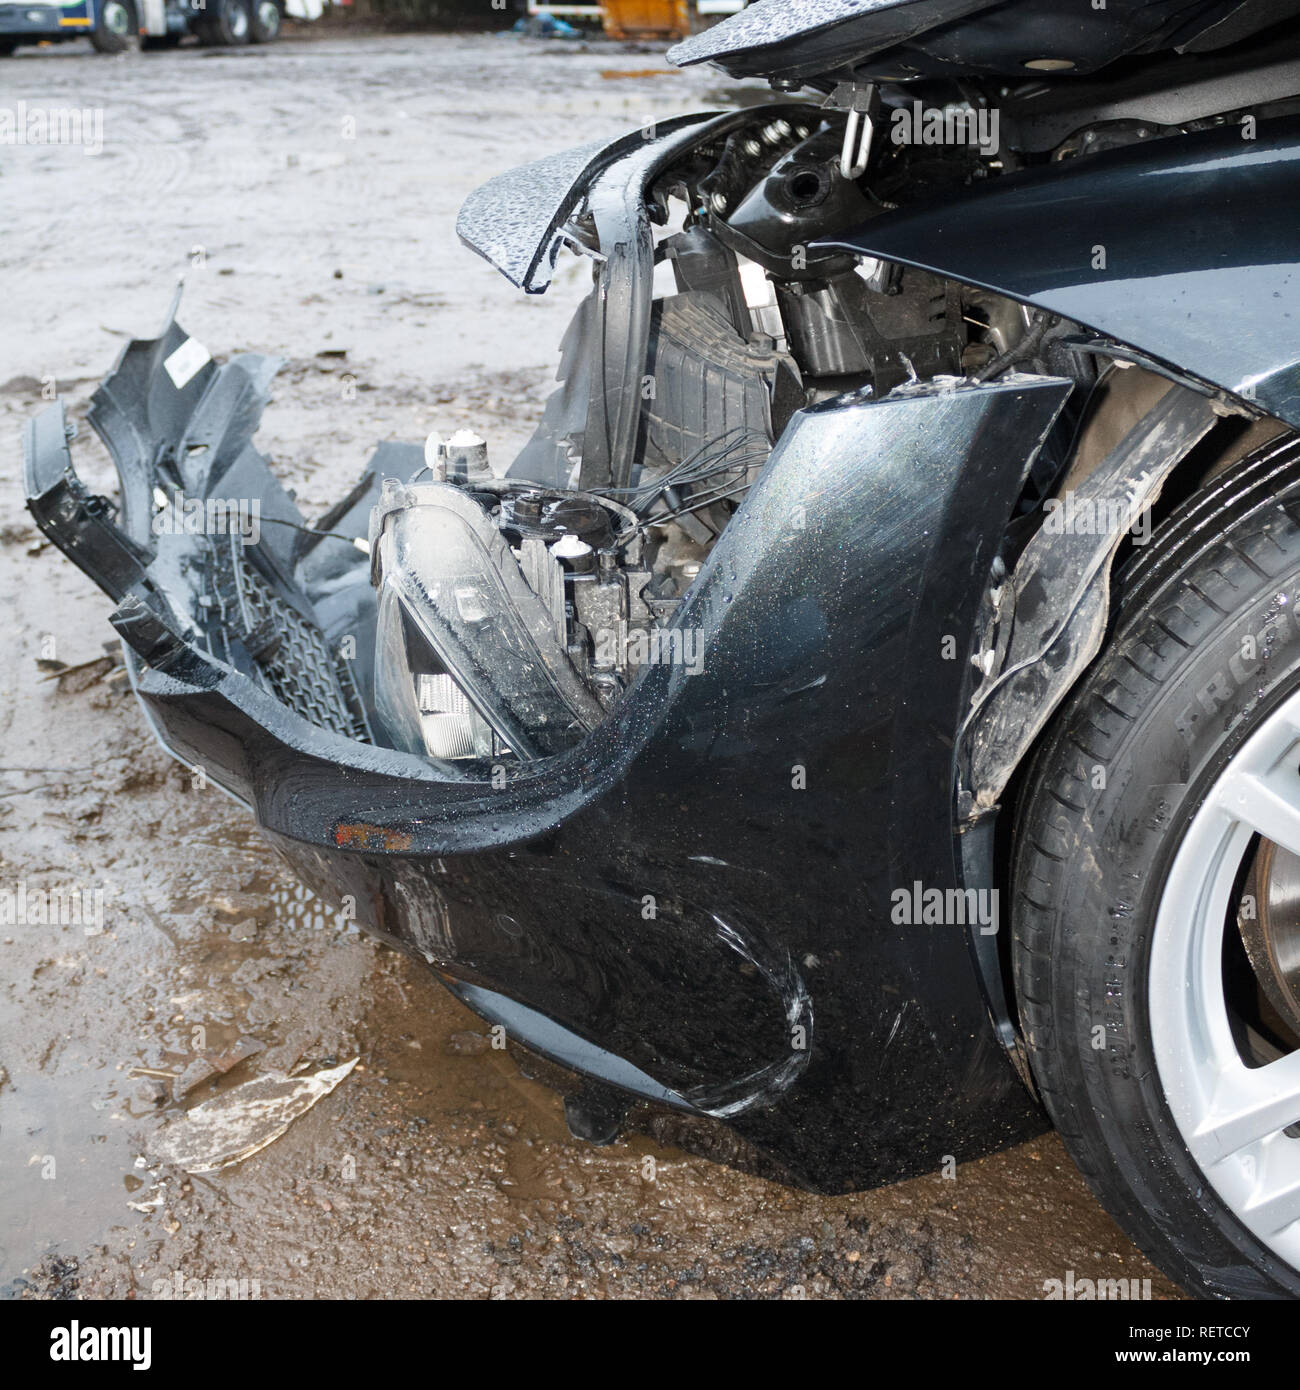 Car crash / vehicle damage; Head on crash, front bumper damage. Stock Photo